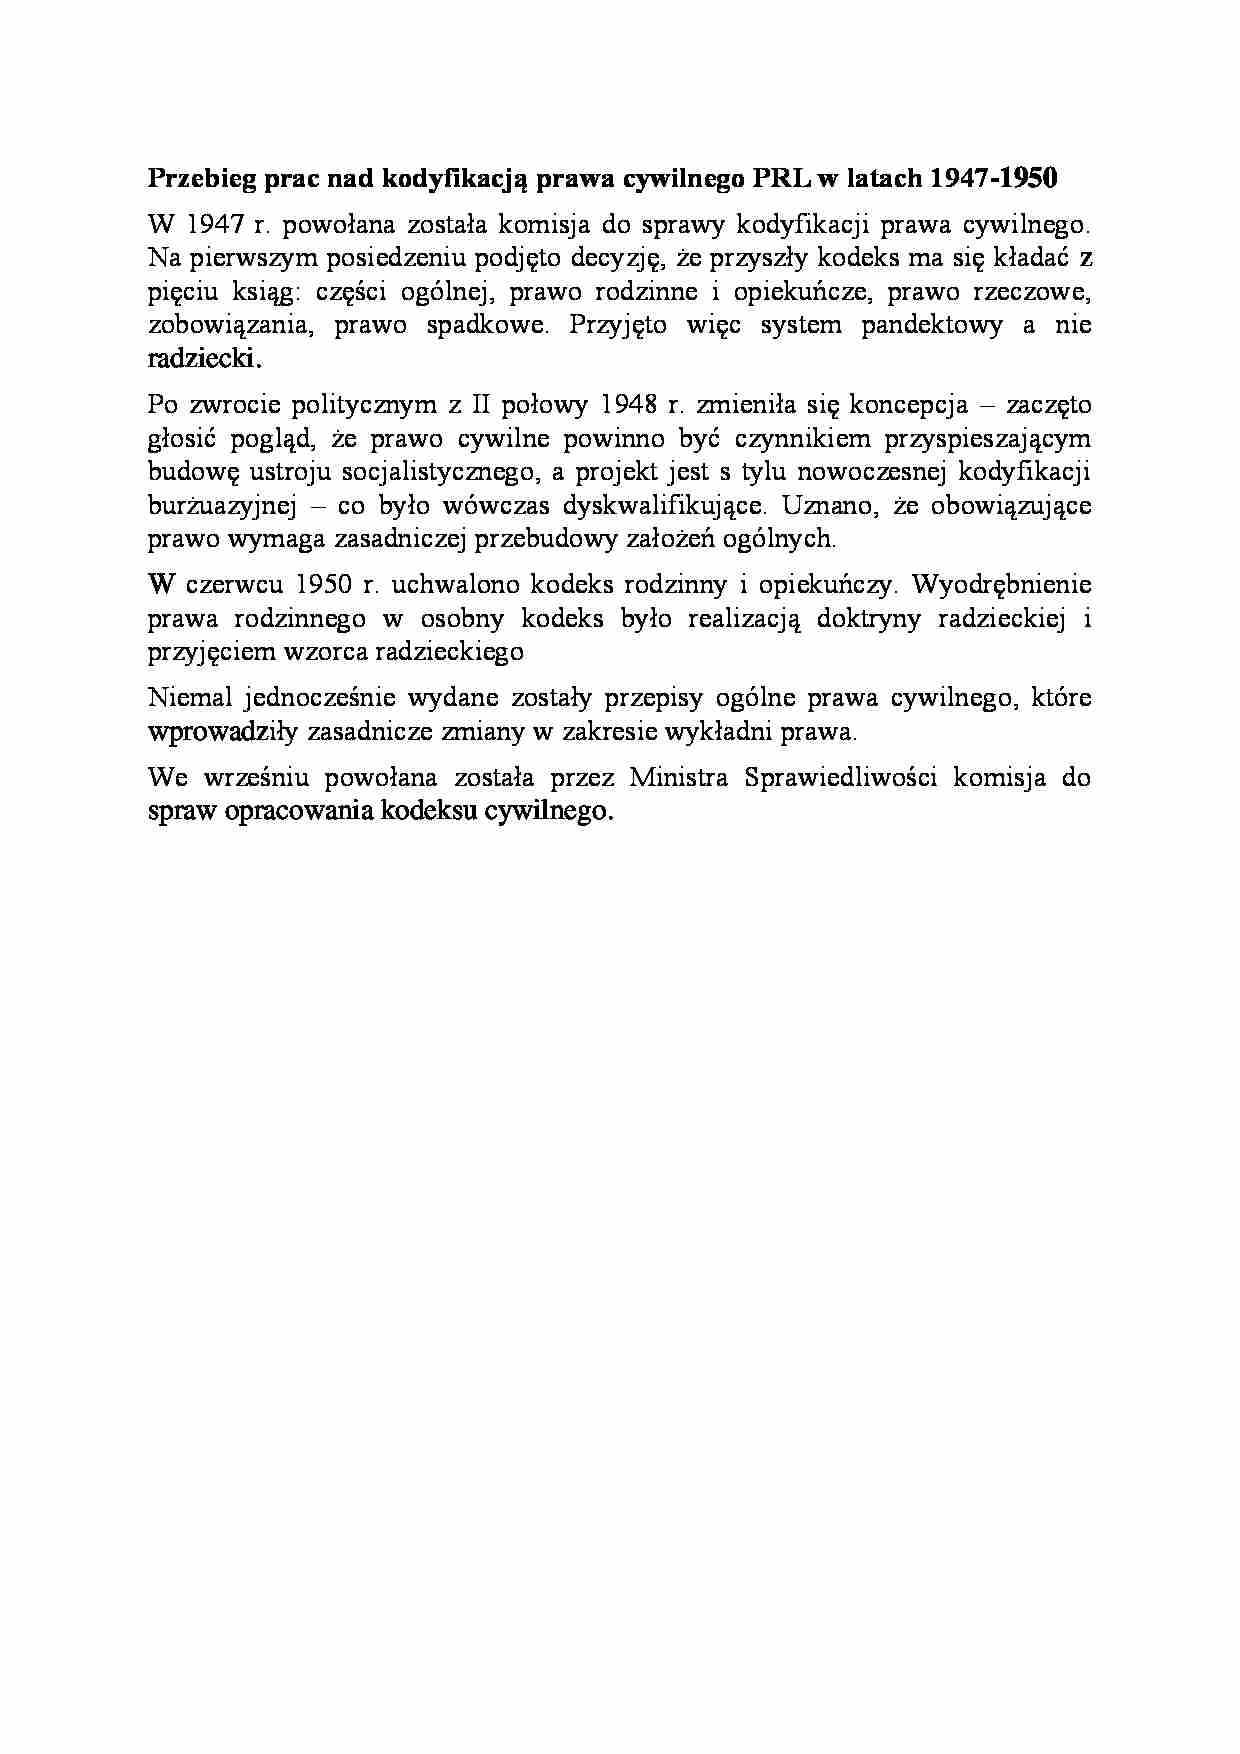 Przebieg prac nad kodyfikacją prawa cywilnego PRL w latach 1947-1950-opracowanie - strona 1